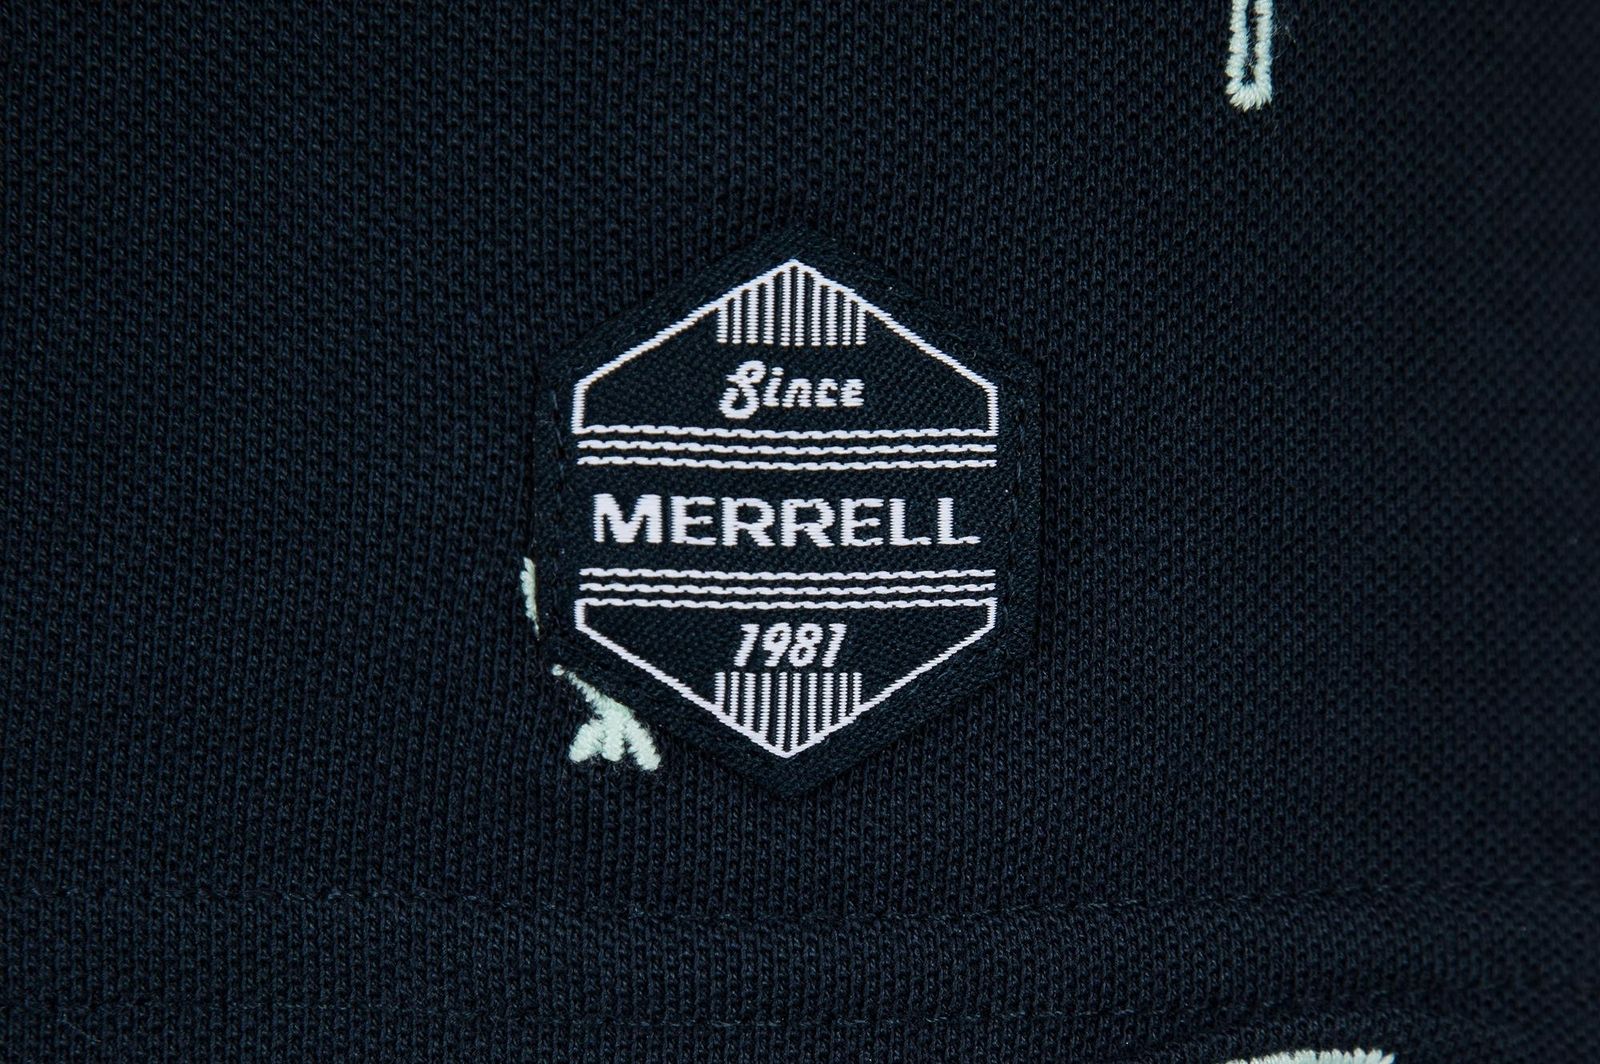   Merrell Men's Polo, : . S19AMRPOM01-M1.  54